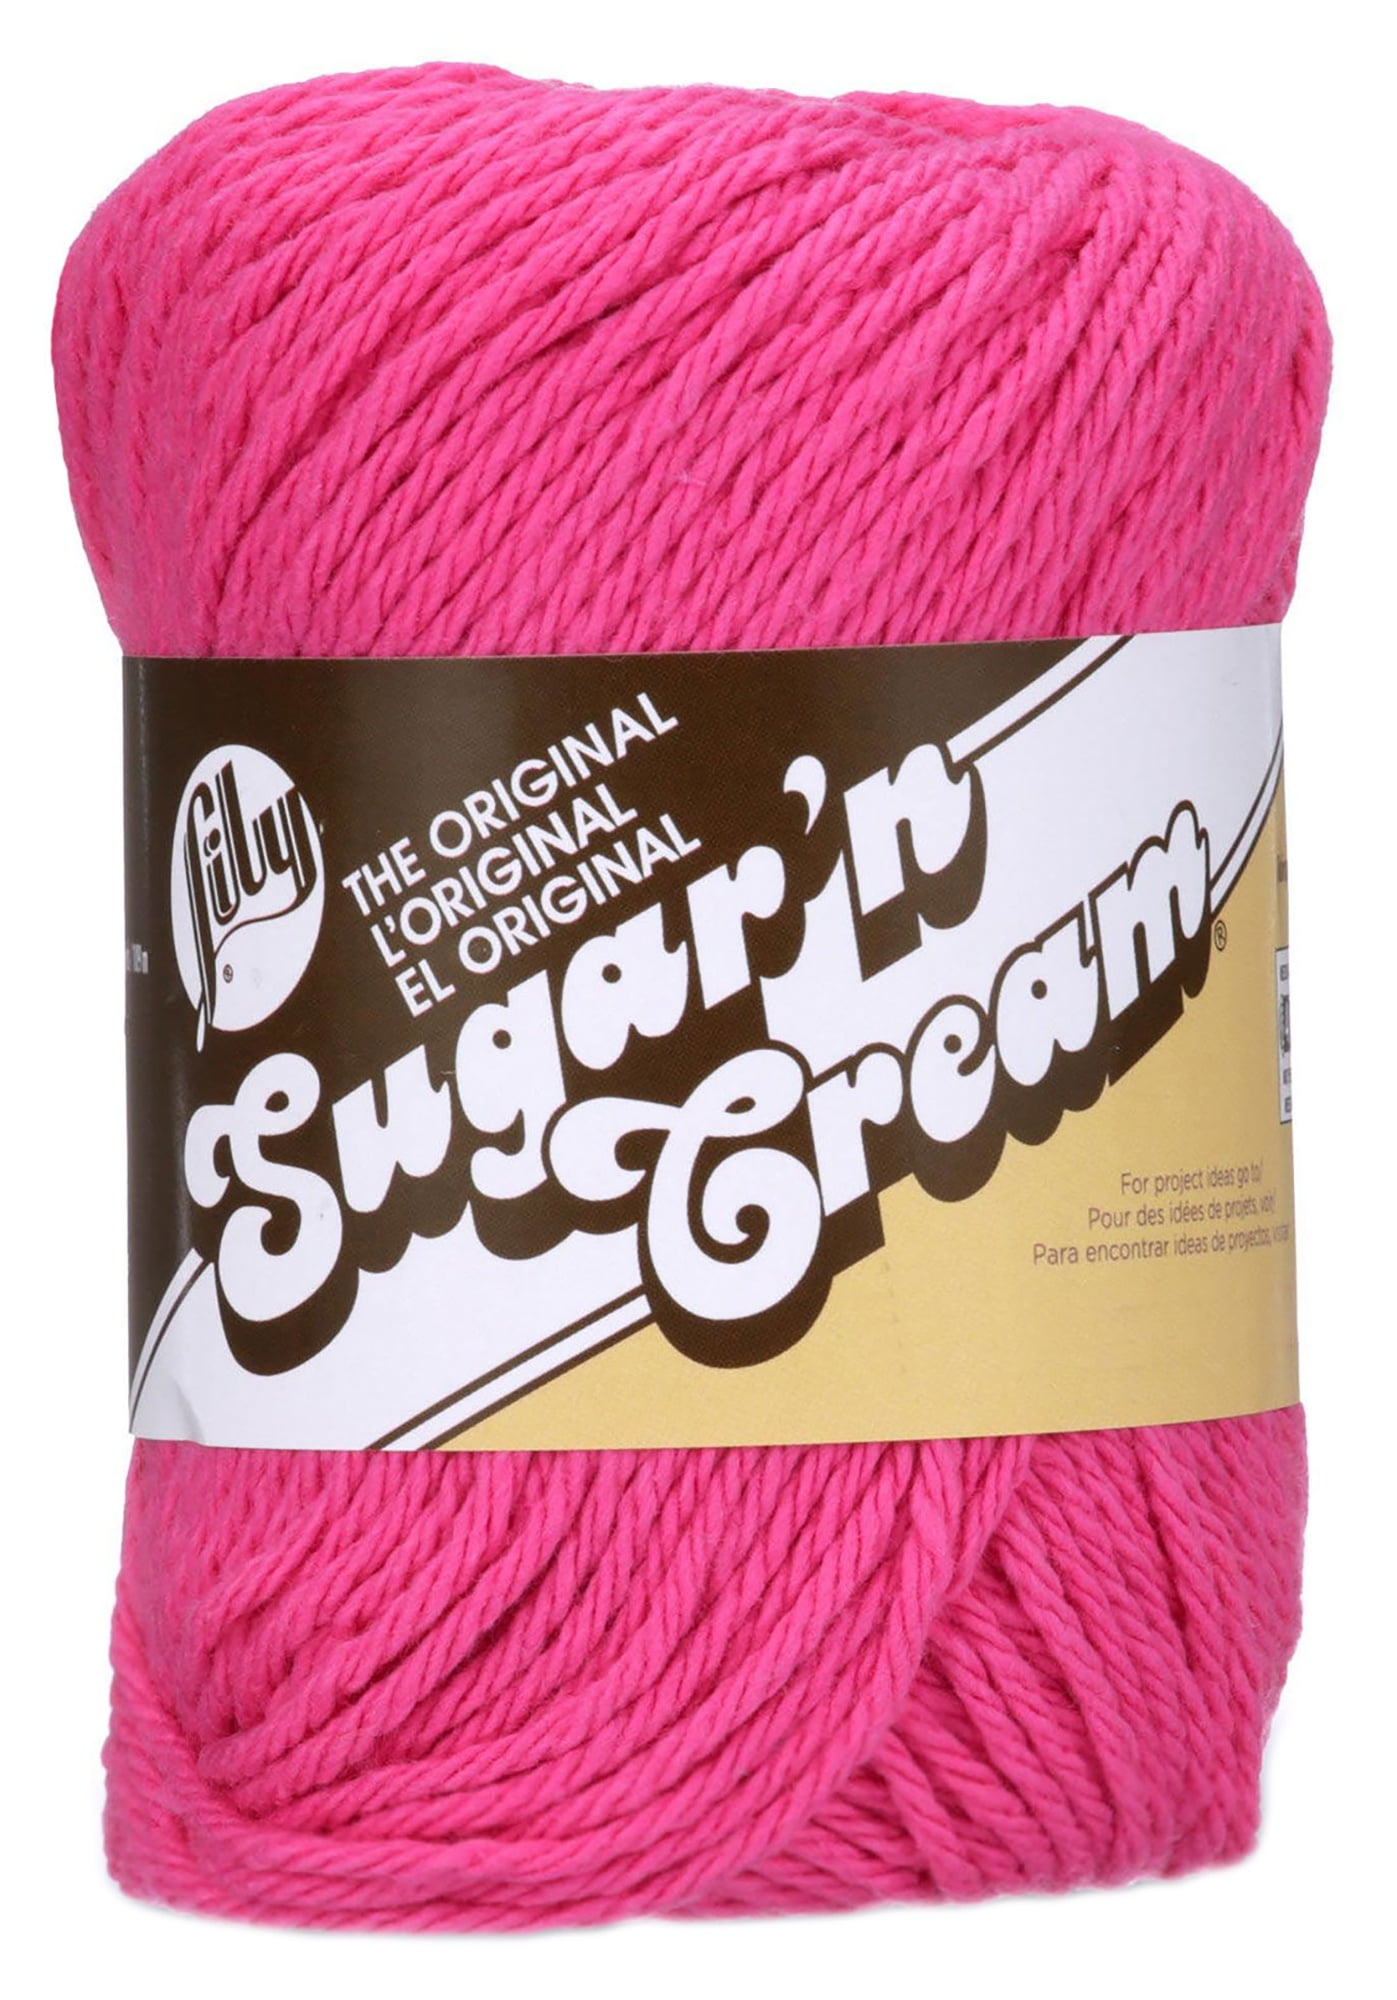 Lily Sugar'n Cream Cotton Cone Yarn, 14 oz, Soft Ecru, 1 Cone